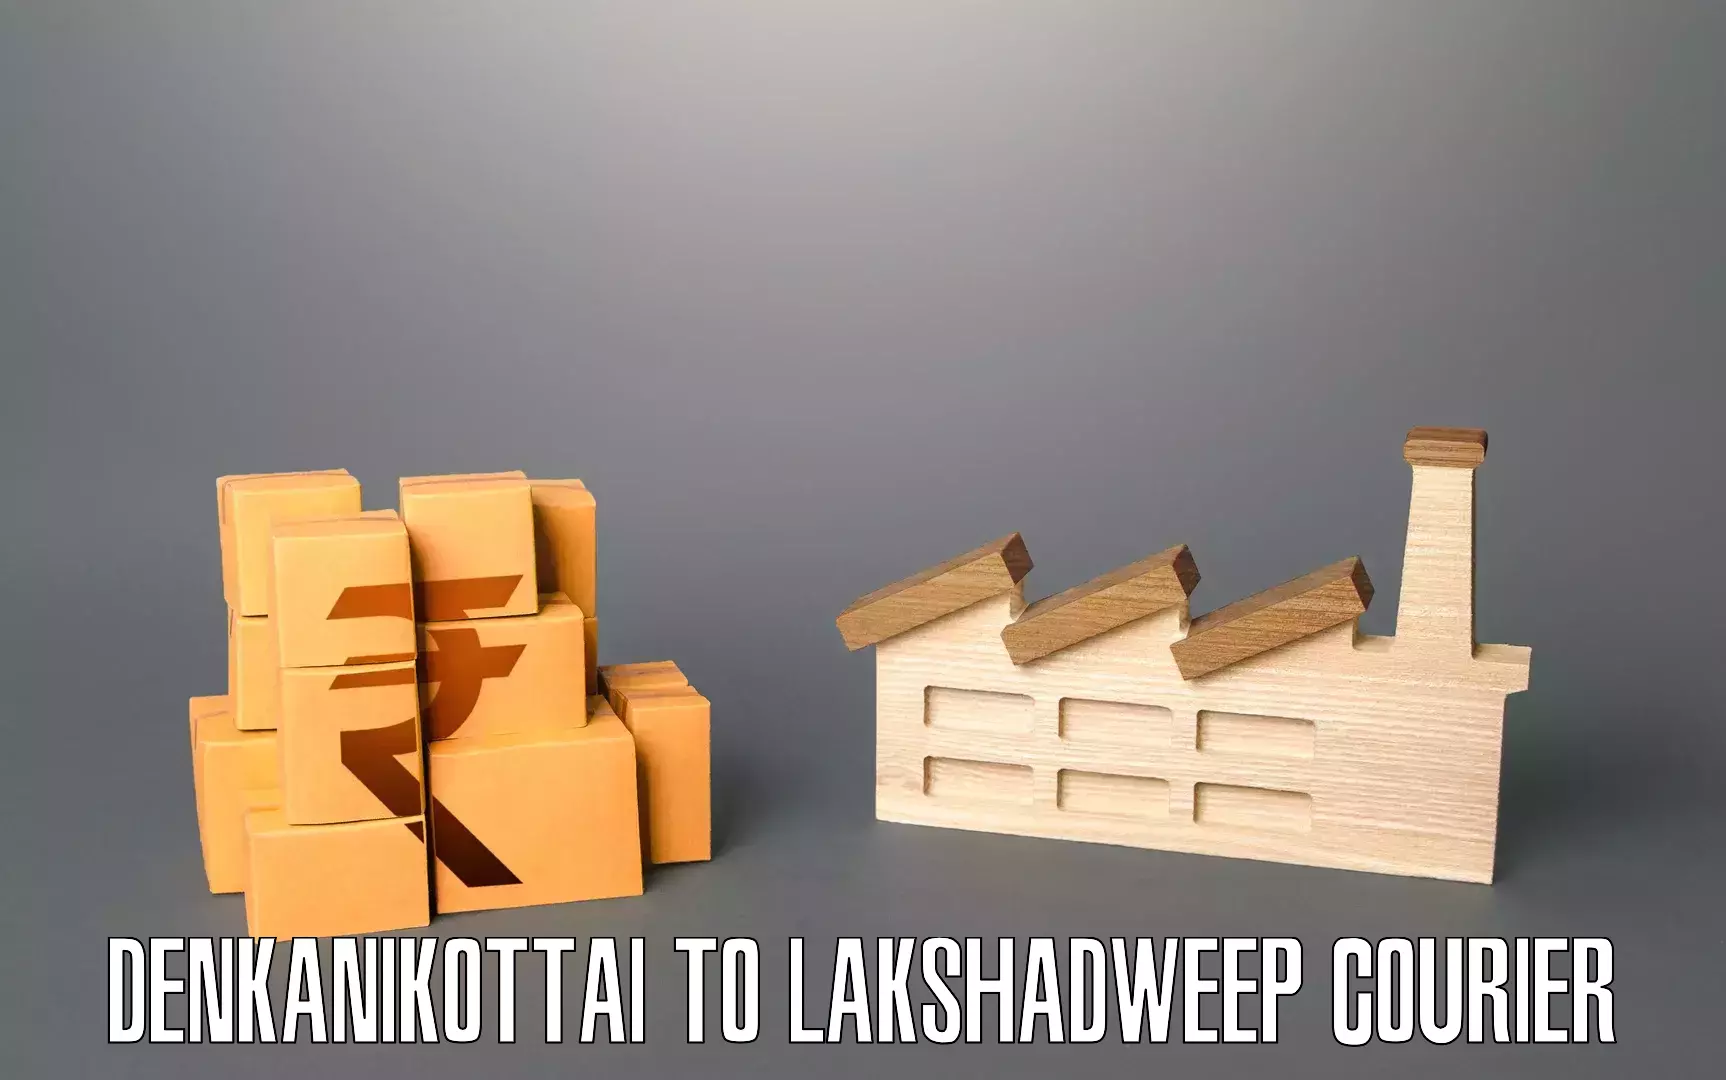 Furniture moving plans Denkanikottai to Lakshadweep